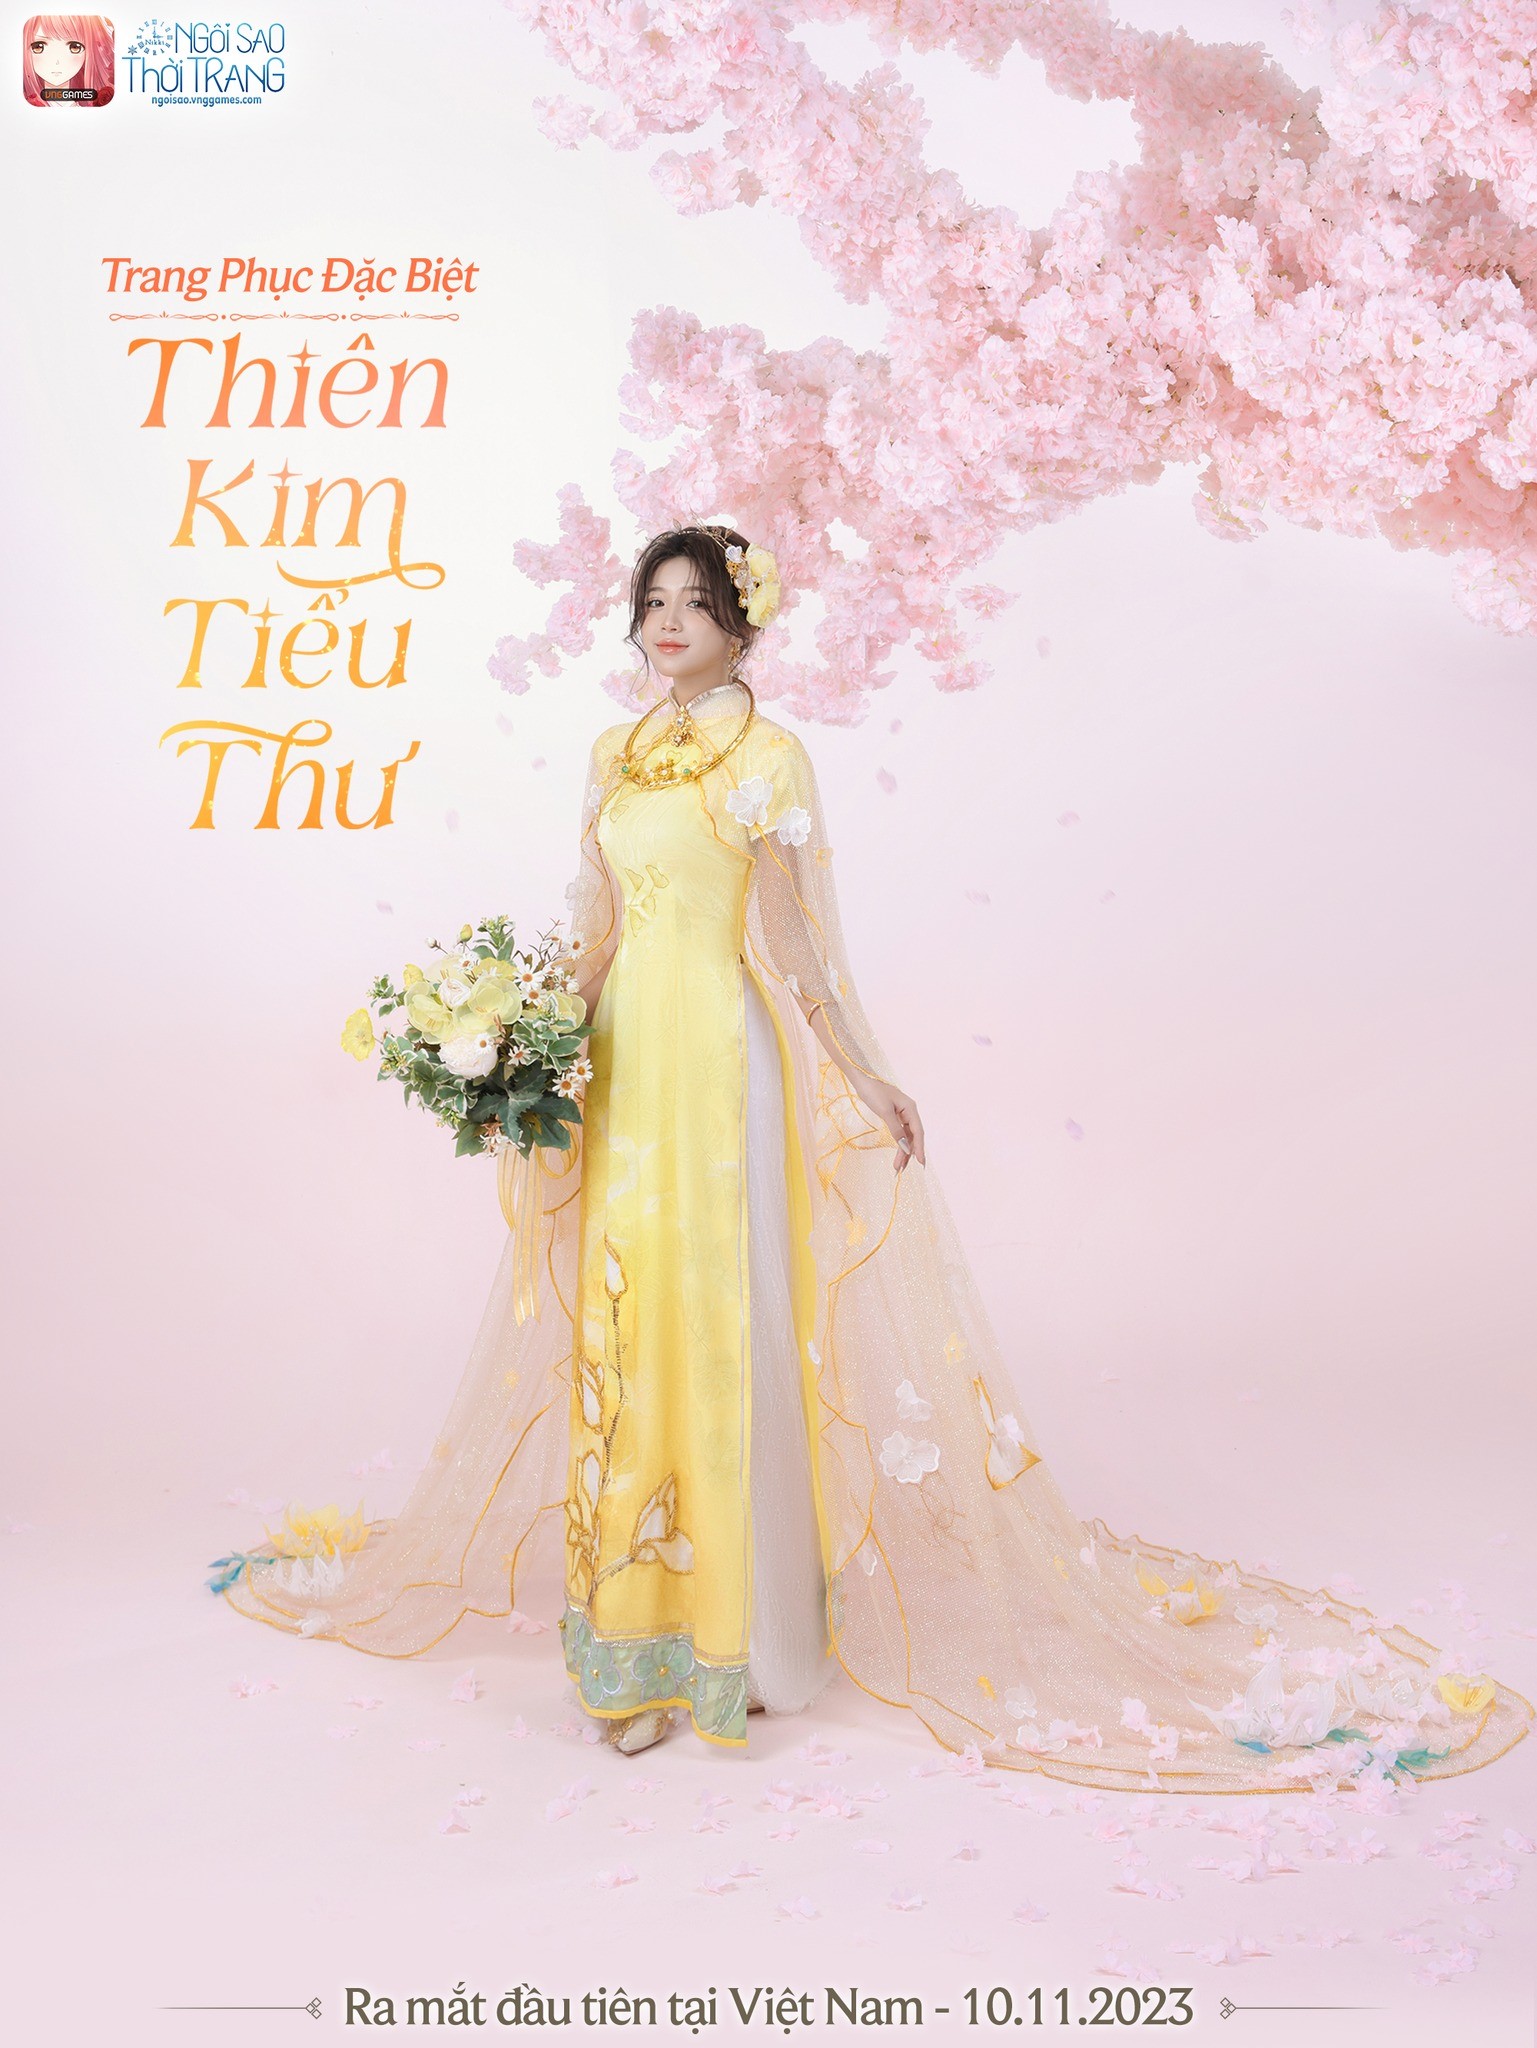 Ngôi Sao Thời Trang VNG - Miracle Nikki ra mắt trang phục đặc biệt dành riêng cho thị trường Việt Nam sau 3 năm - Ảnh 3.